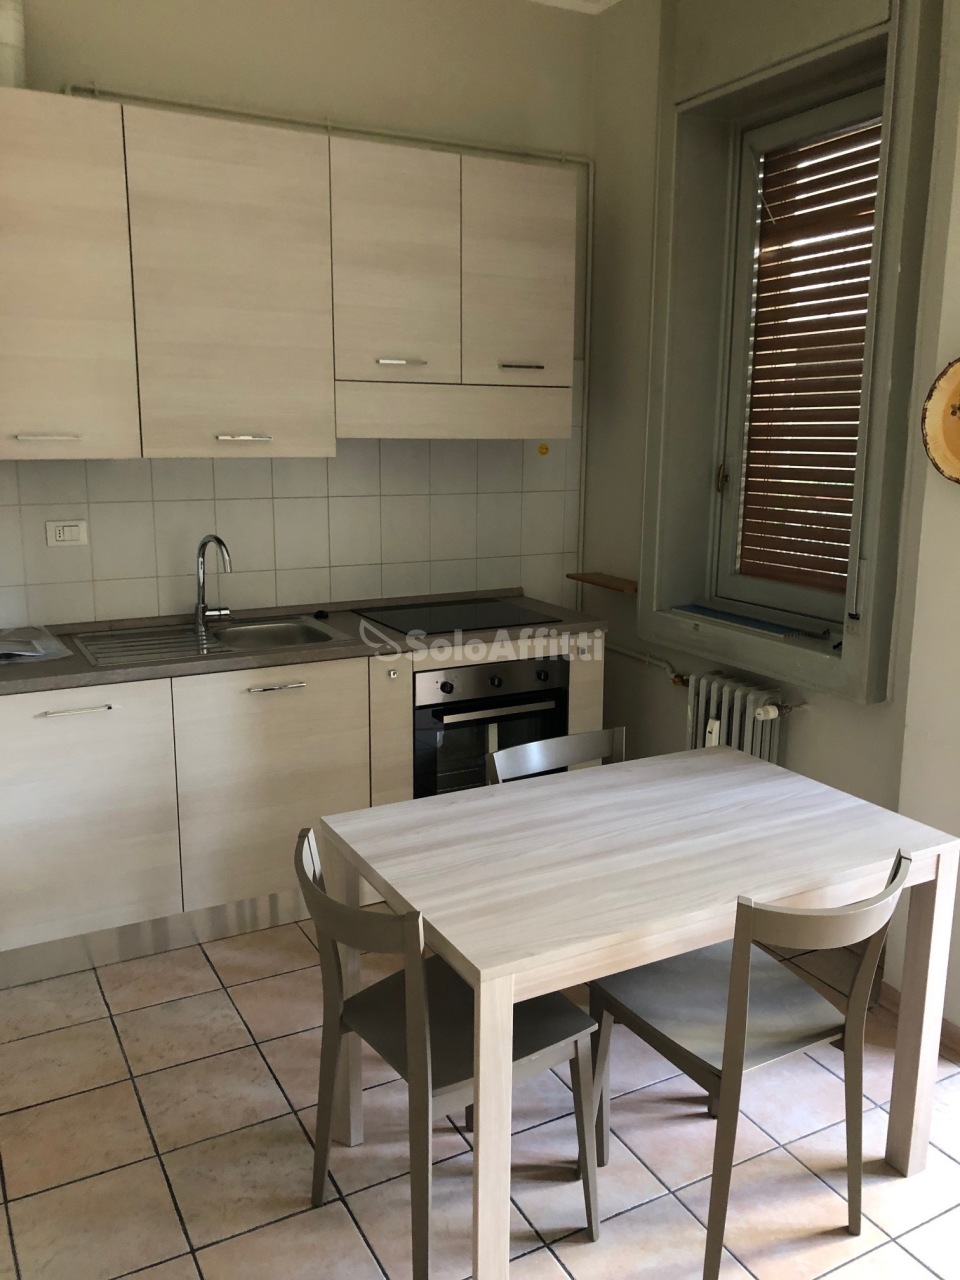 Appartamento in affitto a Saronno, 2 locali, prezzo € 600 | PortaleAgenzieImmobiliari.it